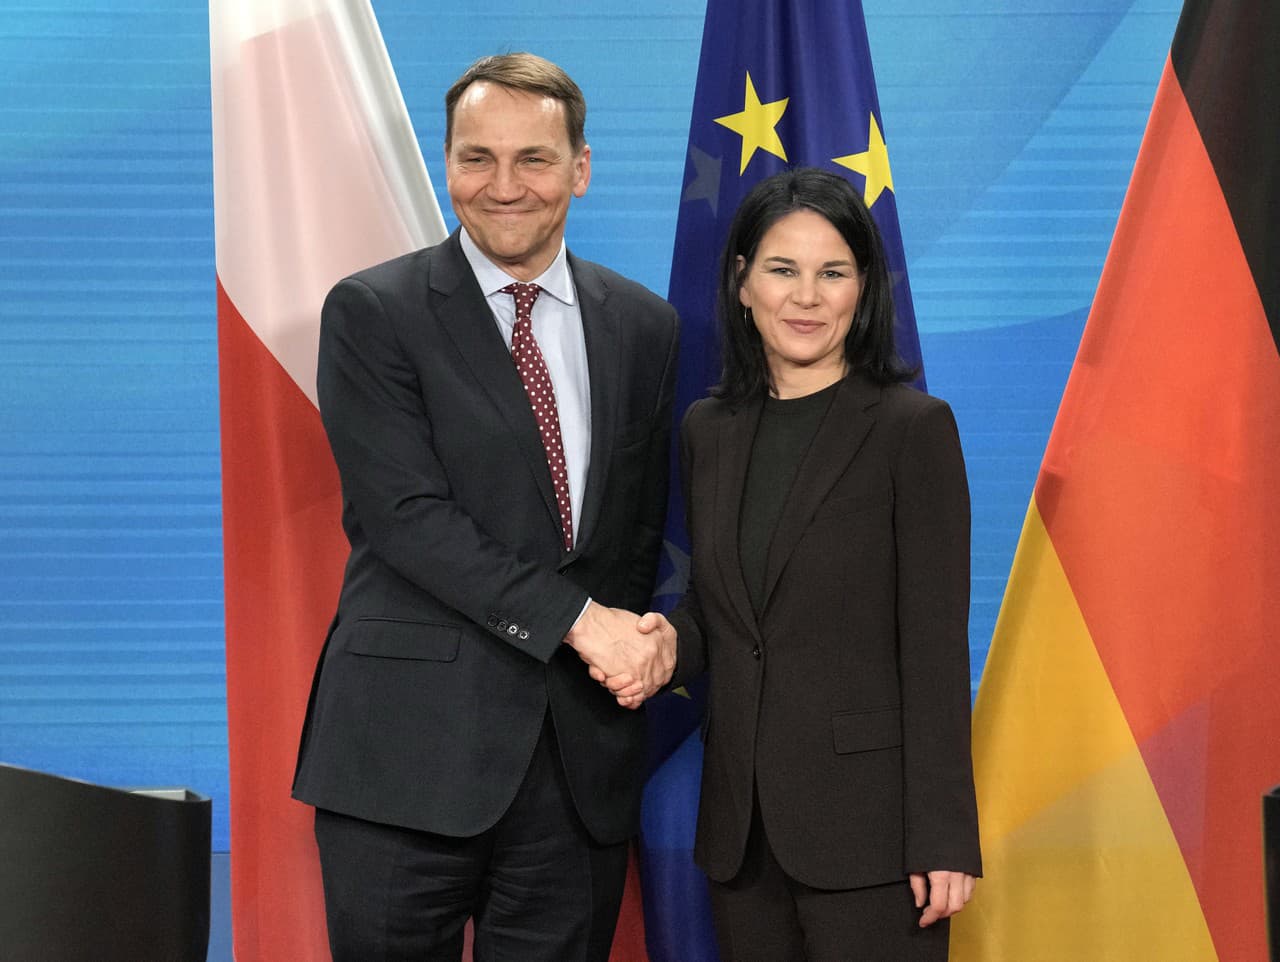 Nemecká ministerka zahraničných vecí Annalena Baerbocková a poľský minister zahraničných vecí Radosław Sikorski